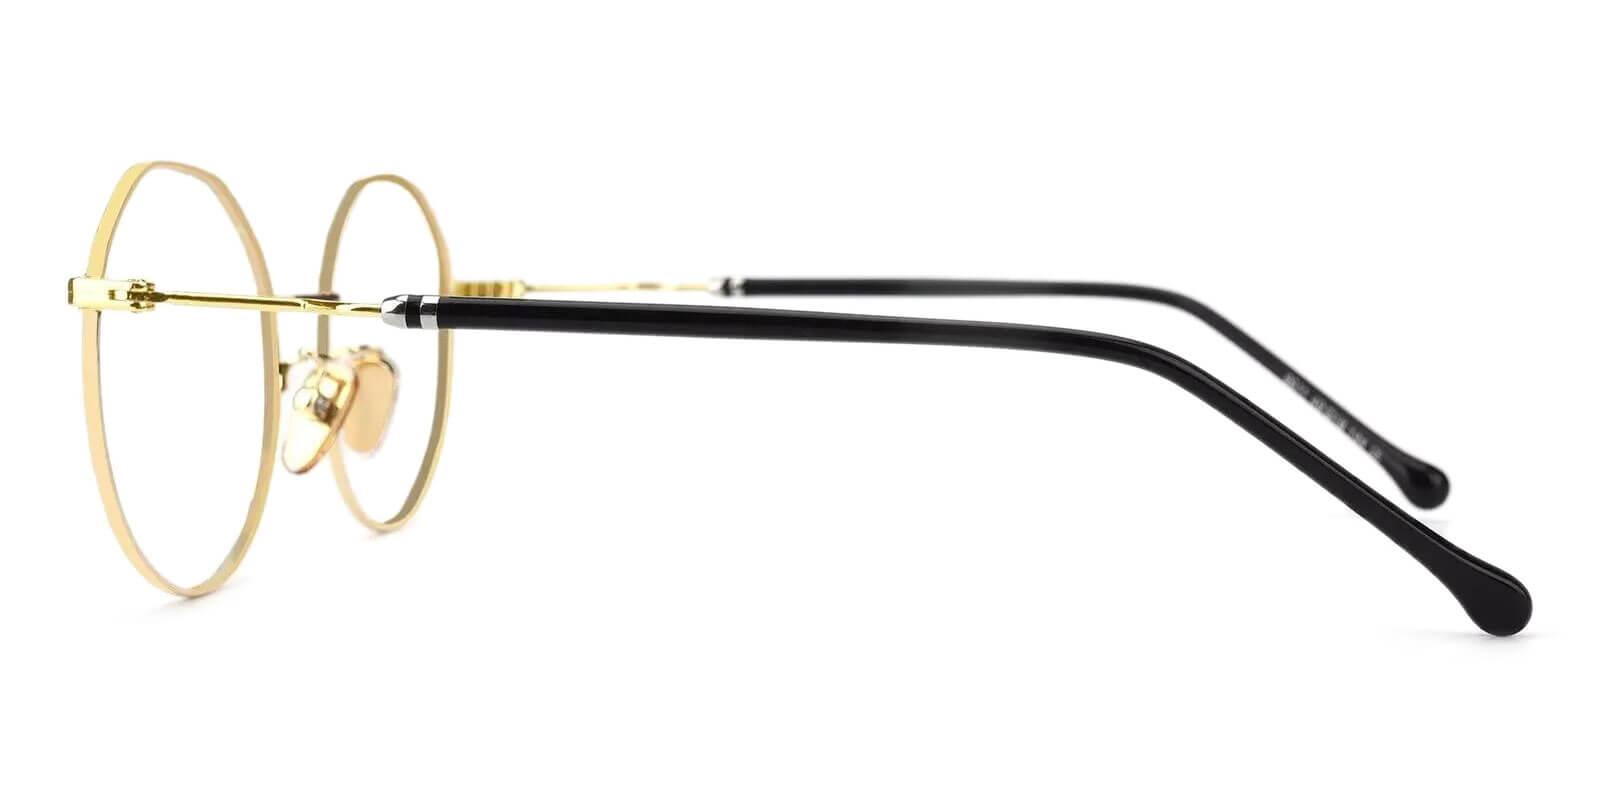 Kawk Gold Metal Eyeglasses , NosePads Frames from ABBE Glasses